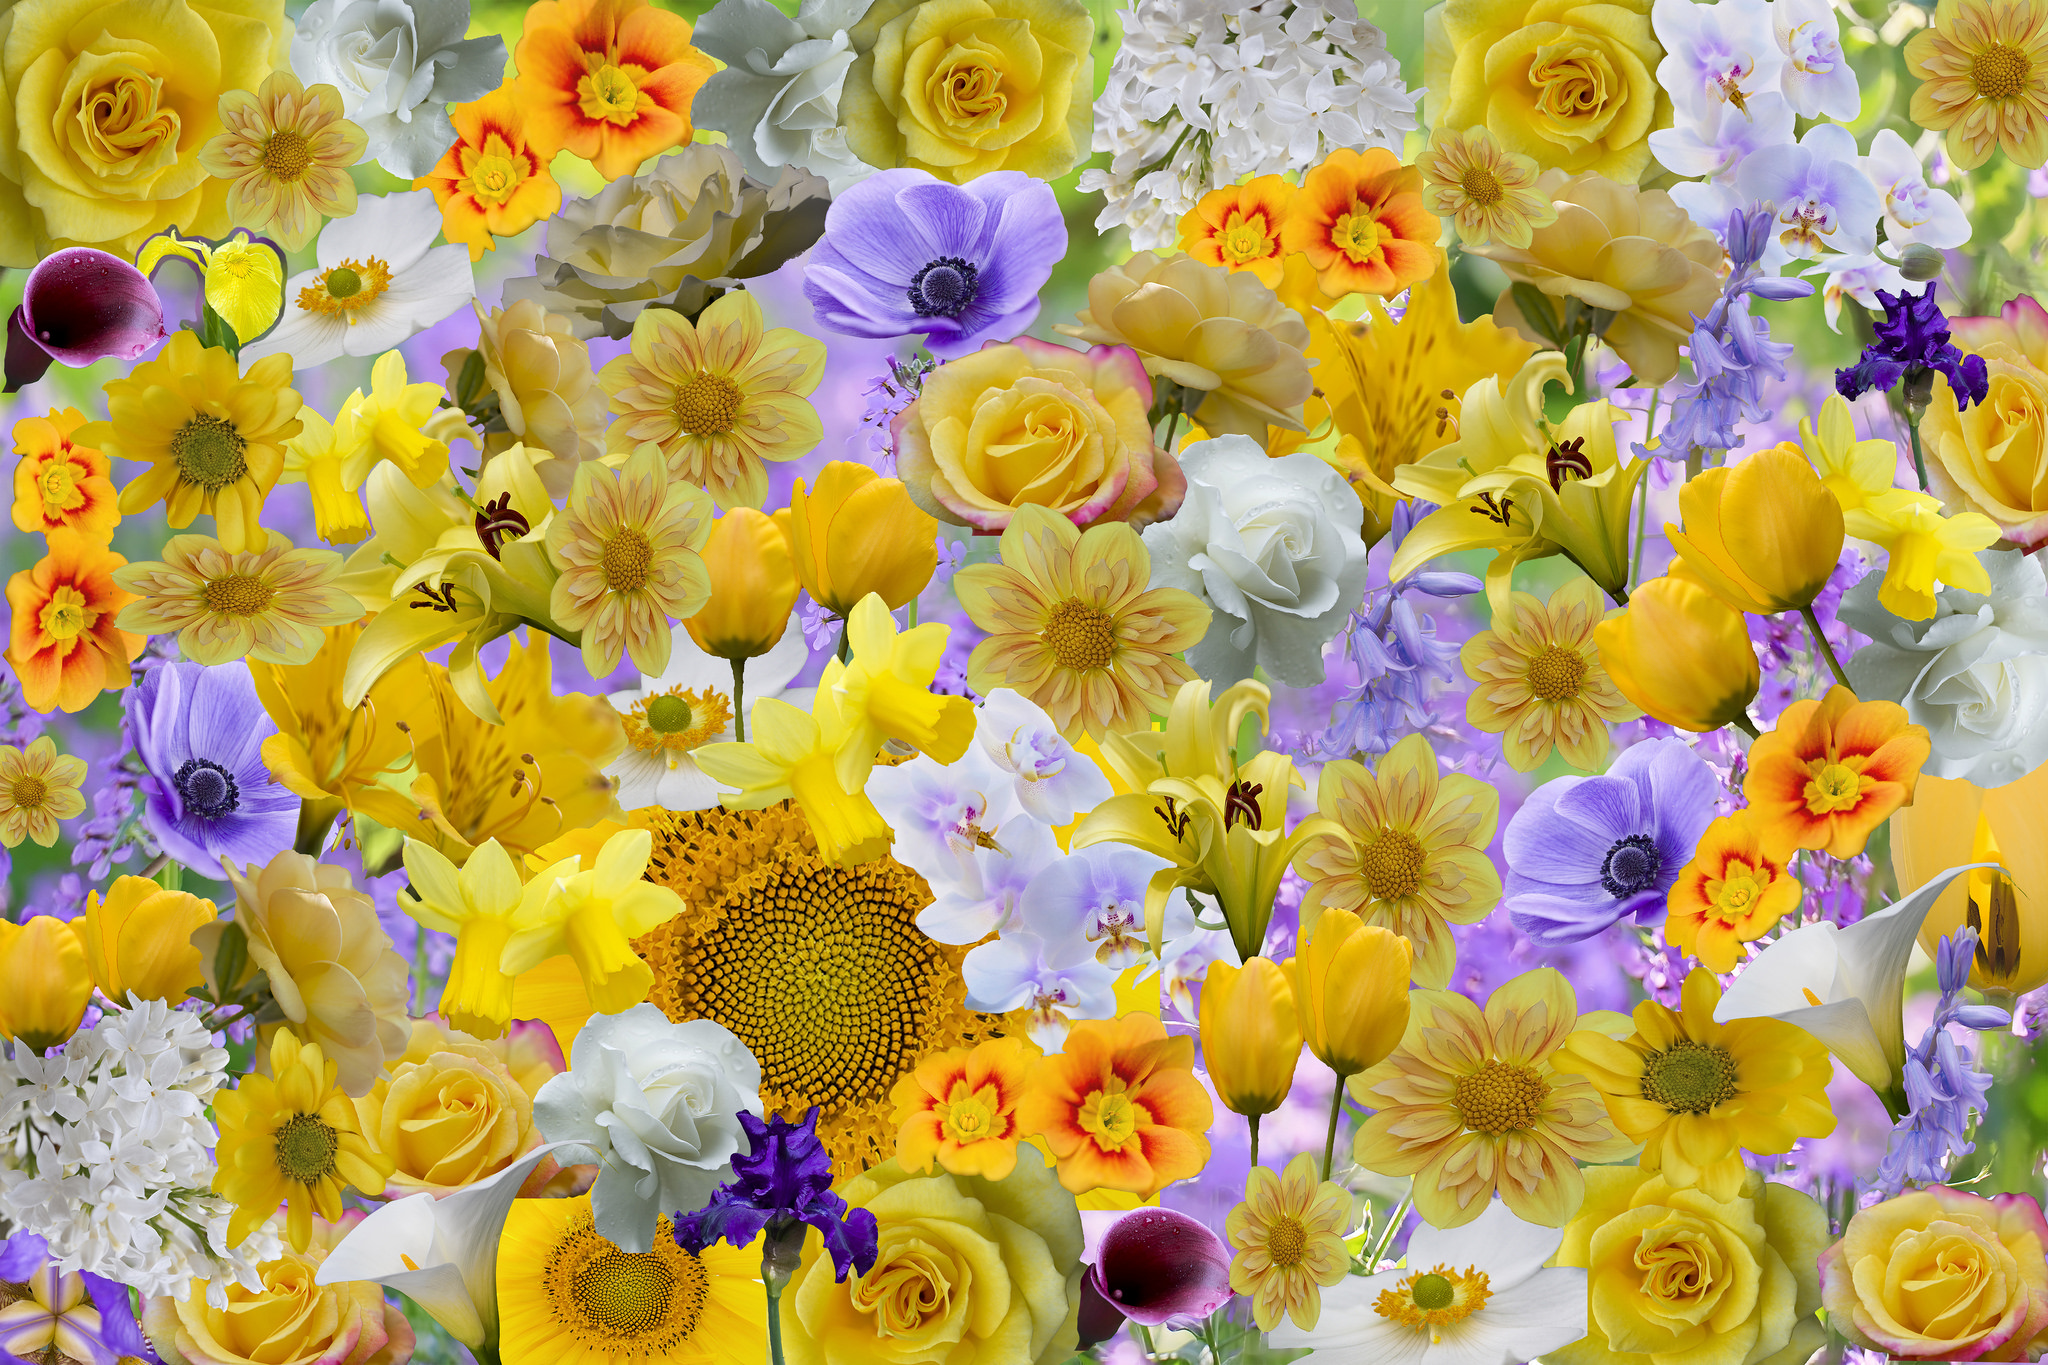 Скачать обои бесплатно Цветок, Цвета, Красочный, Желтый Цветок, Белый Цветок, Фиолетовый Цветок, Земля/природа, Флауэрсы картинка на рабочий стол ПК